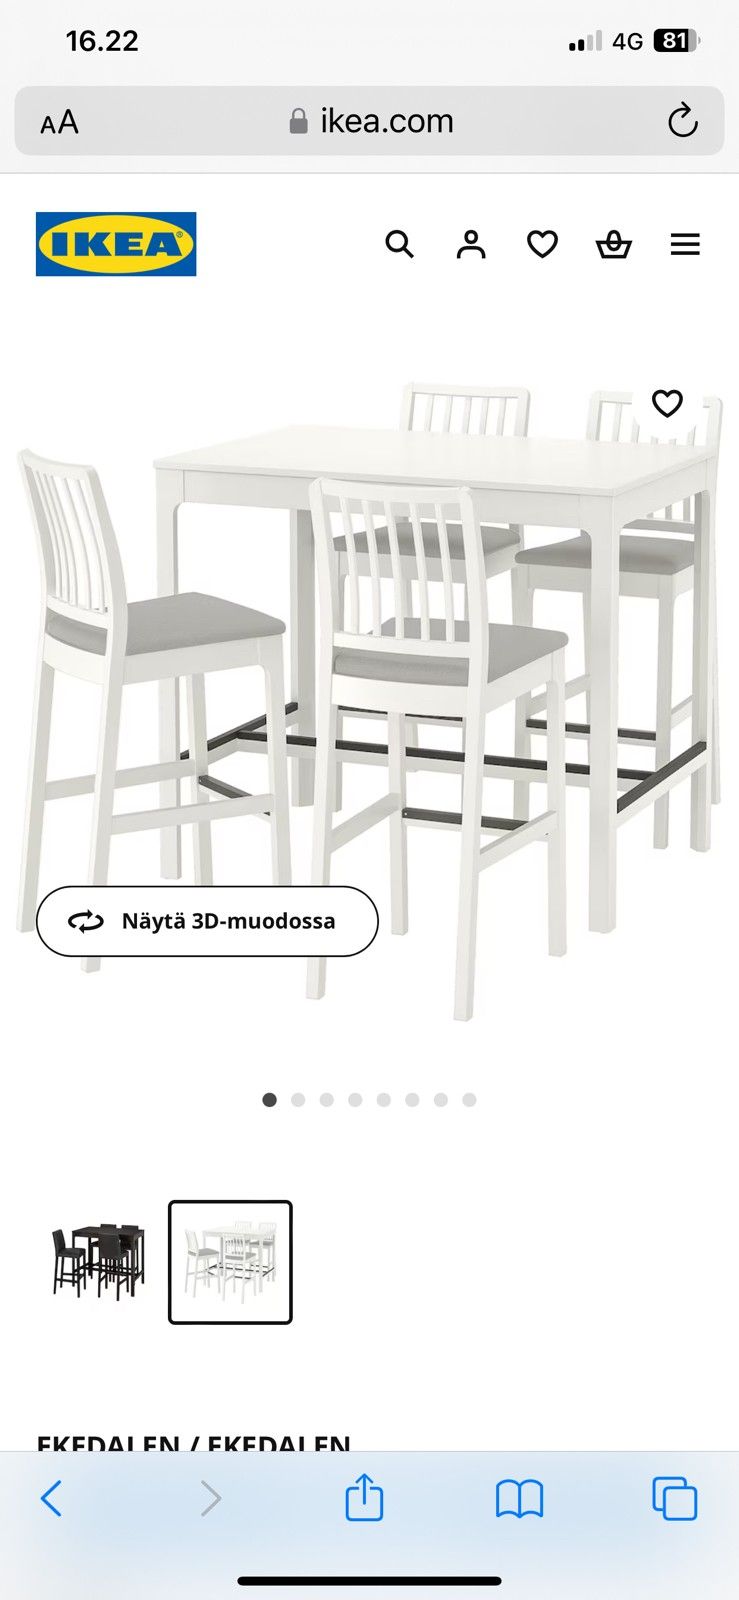 Ikean ruokaryhmä